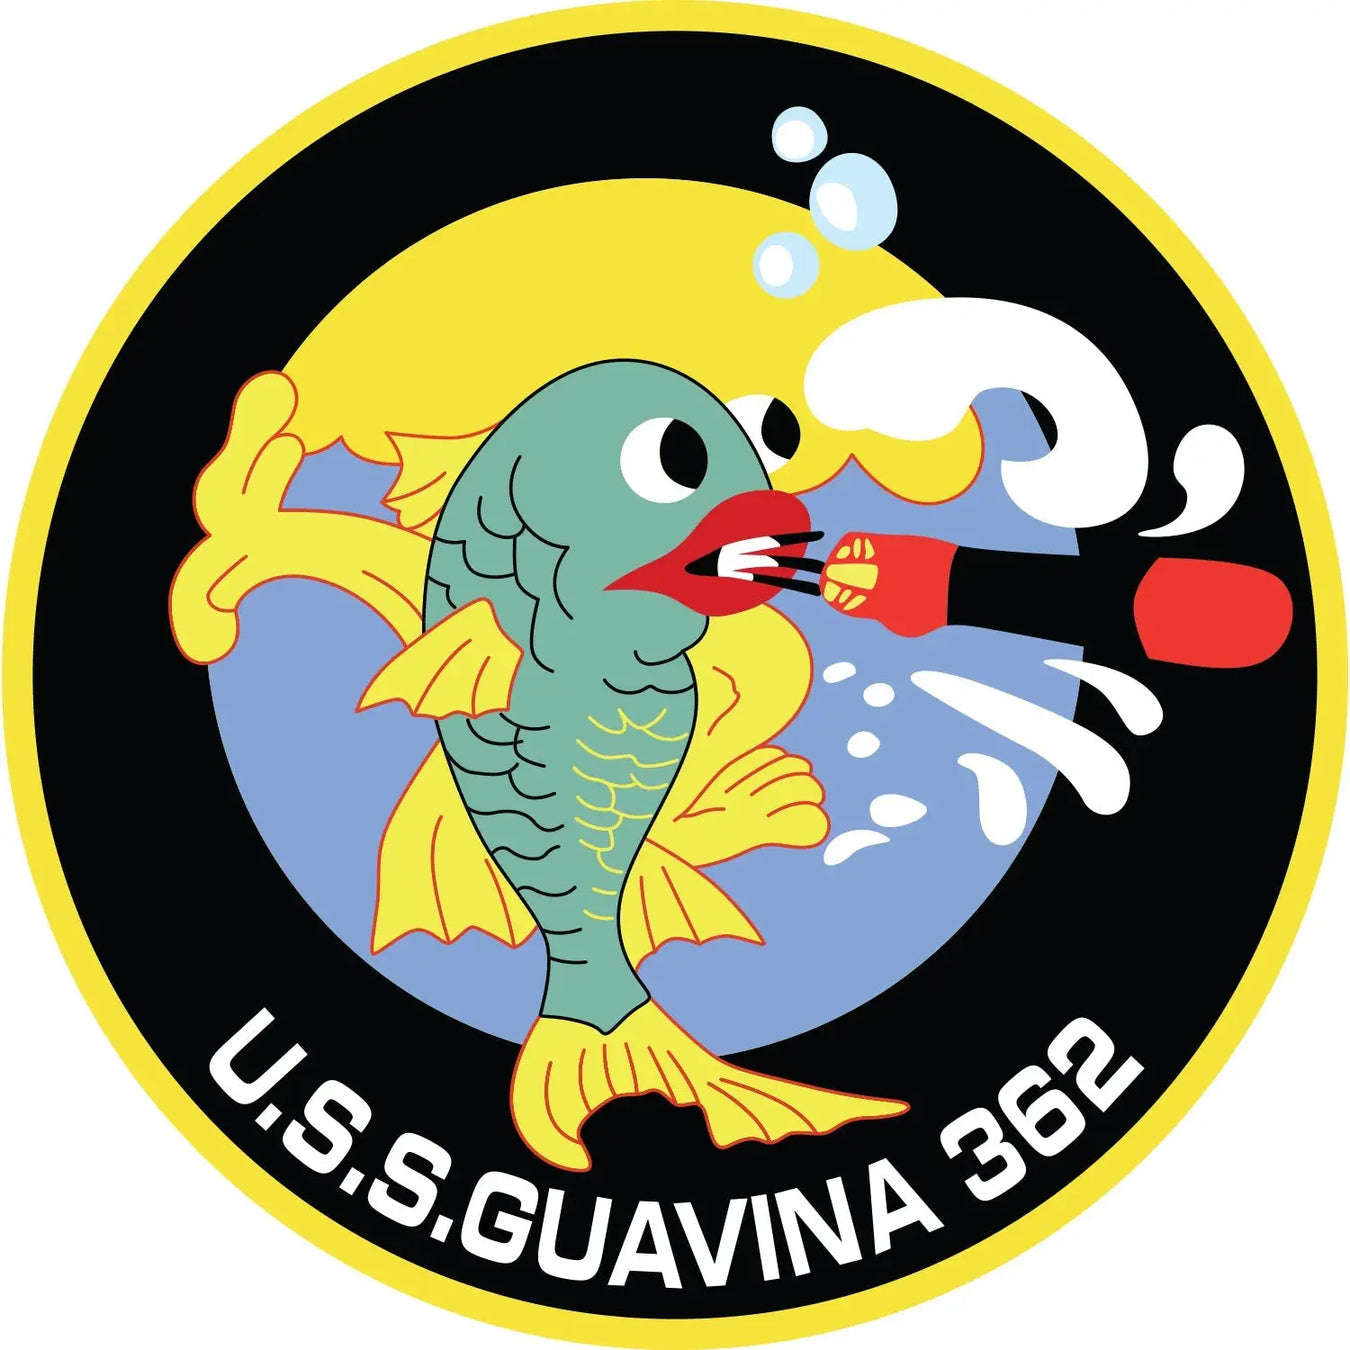 USS Guavina (SS-362)